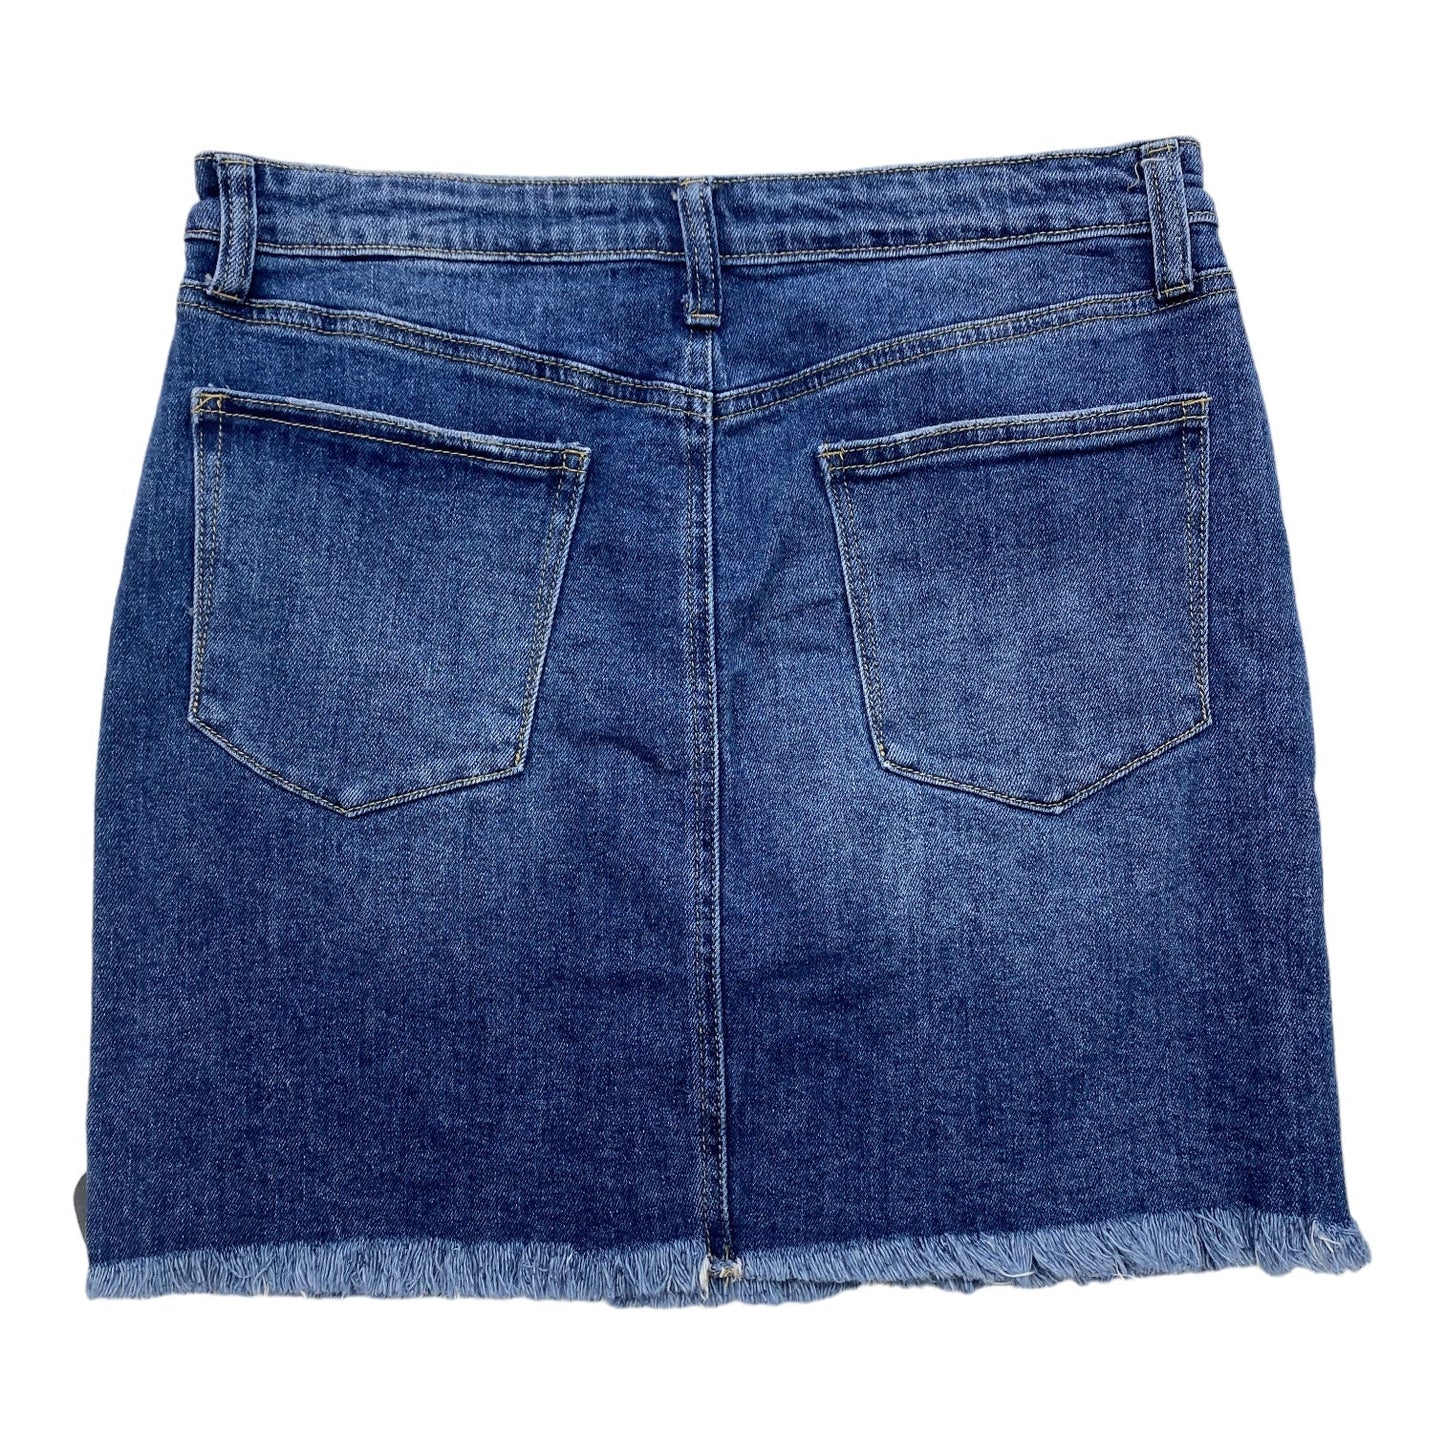 Blue Denim Skirt Midi Abound, Size 8